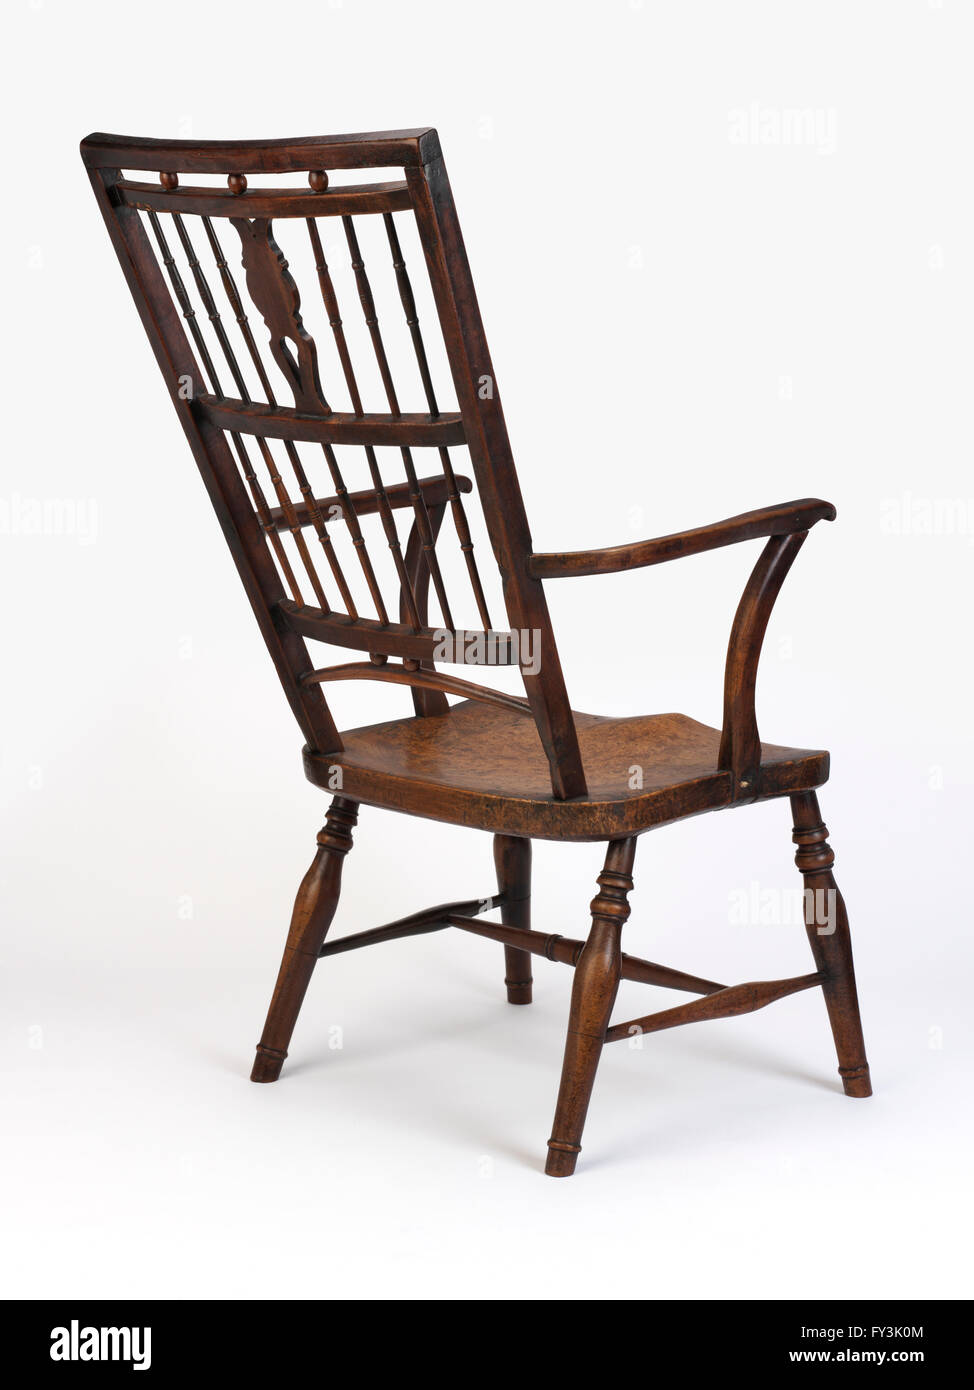 Obsthölzern Sessel mit hoher Rückenlehne, beschrieben als "Mendlesham" Stuhl Stockfoto